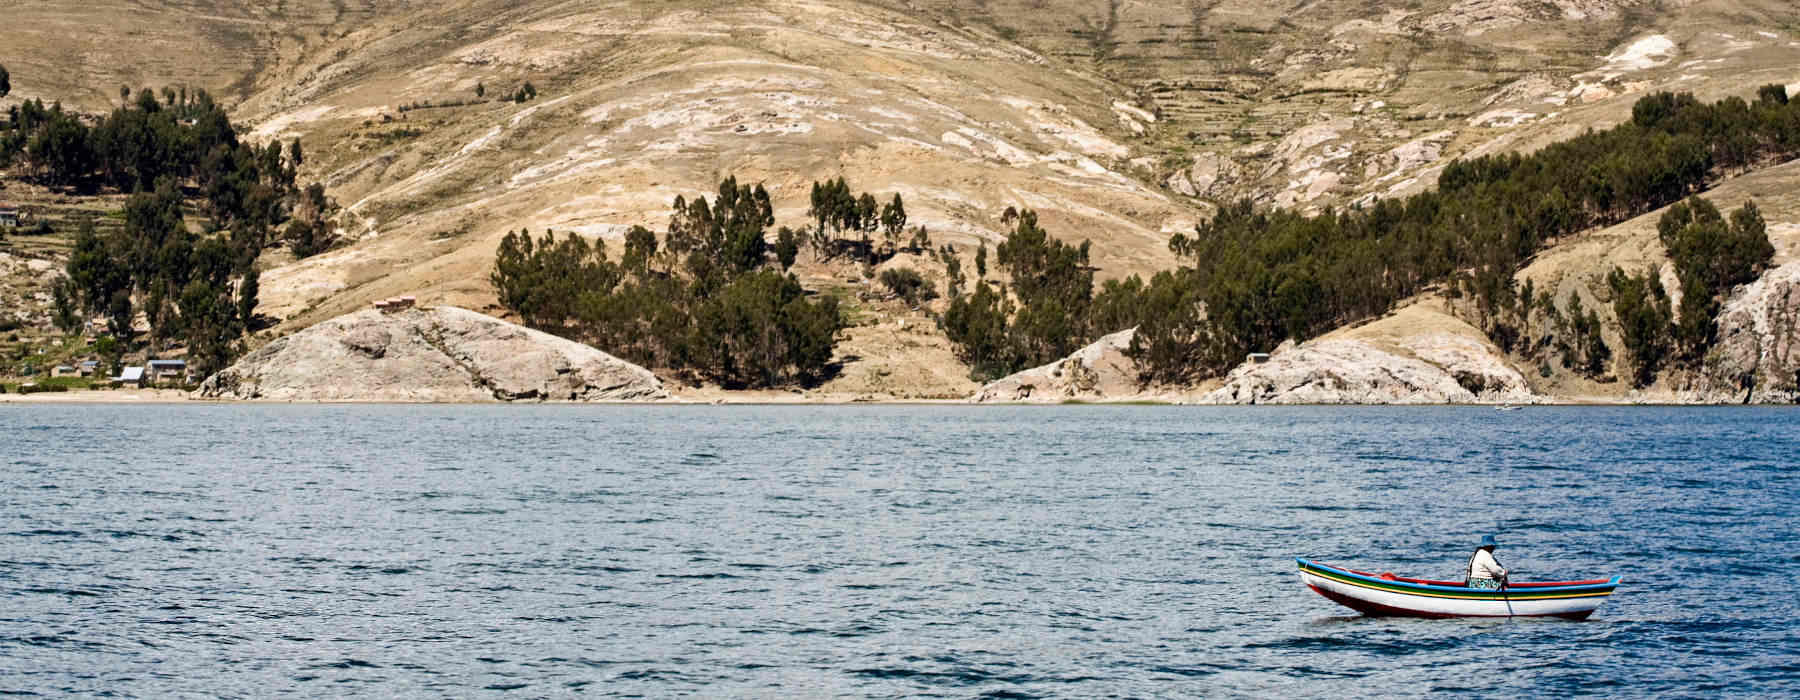  La Paz & Lake Titicaca holidays